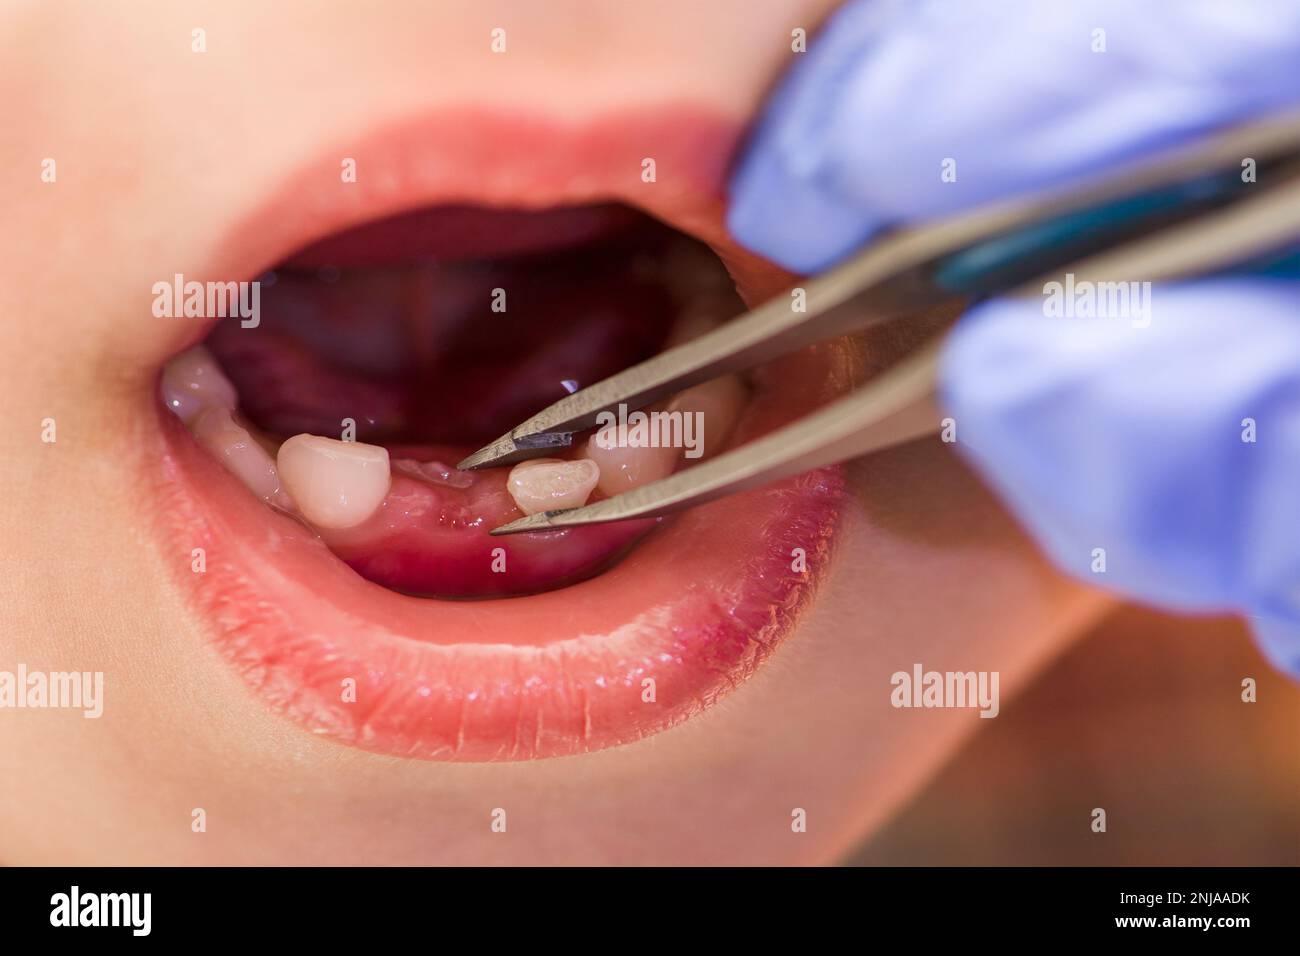 Kinderzähne. Der Arzt zieht einem Kind einen Zahn. Milchzähne bei einem Kind, Nahaufnahme Stockfoto